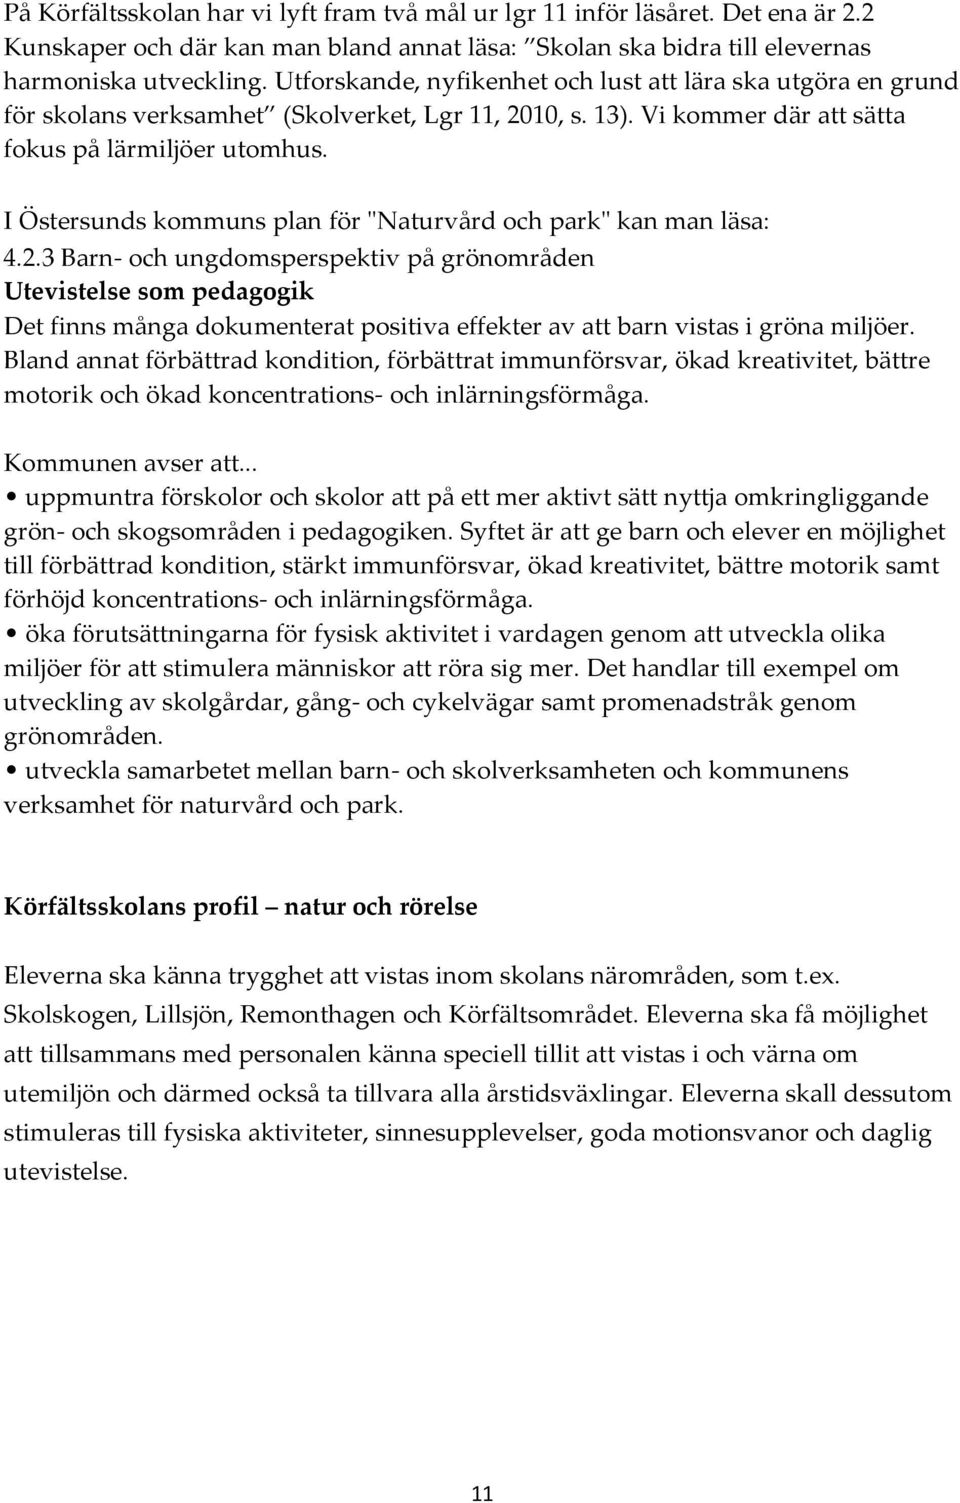 I Östersunds kommuns plan för "Naturvård och park" kan man läsa: 4.2.